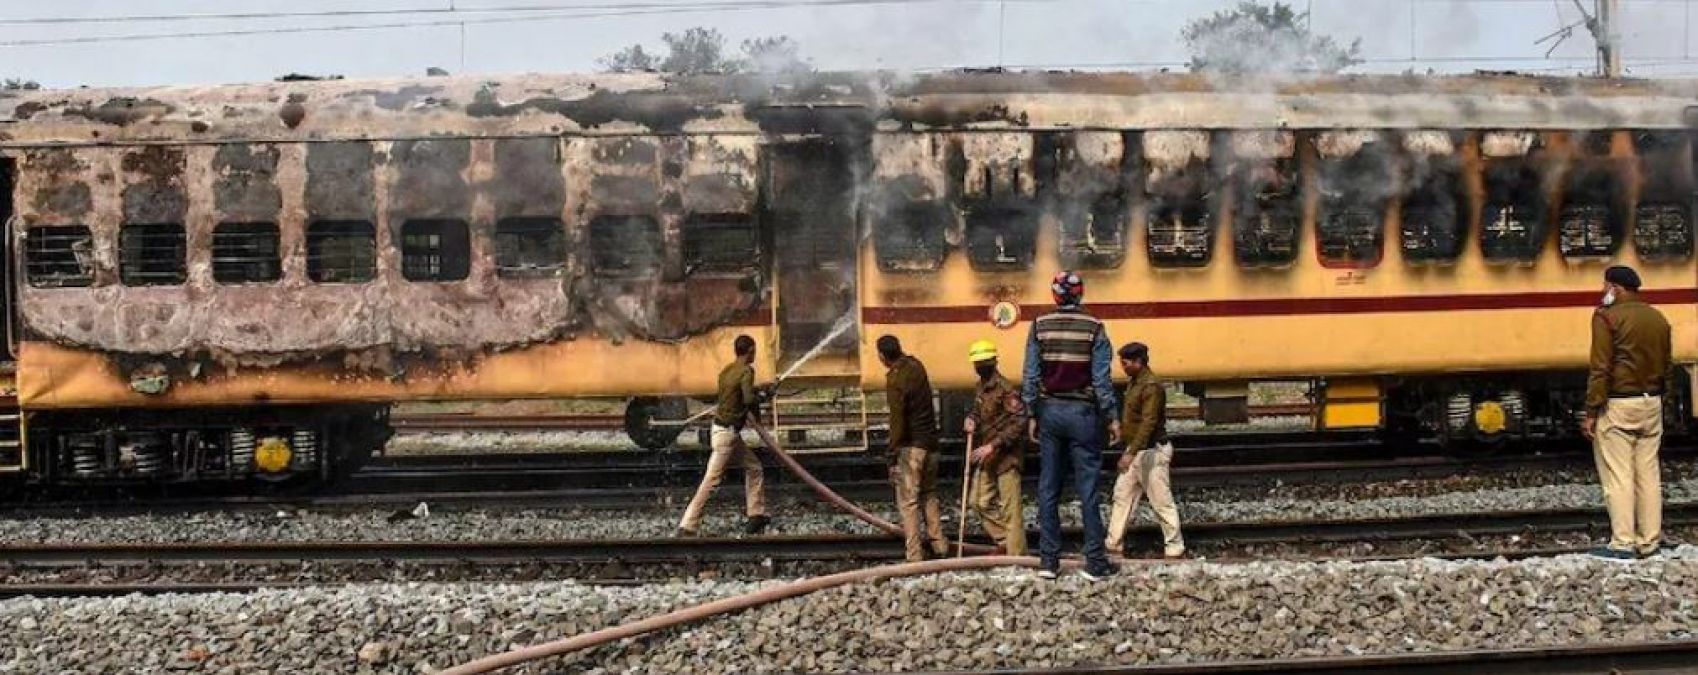 रिजल्‍ट से नाखुश छात्रों का हंगामा, गया में ट्रेन फूंकी-यूपी-बिहार में रेलवे की संपत्ति में तोड़फोड़